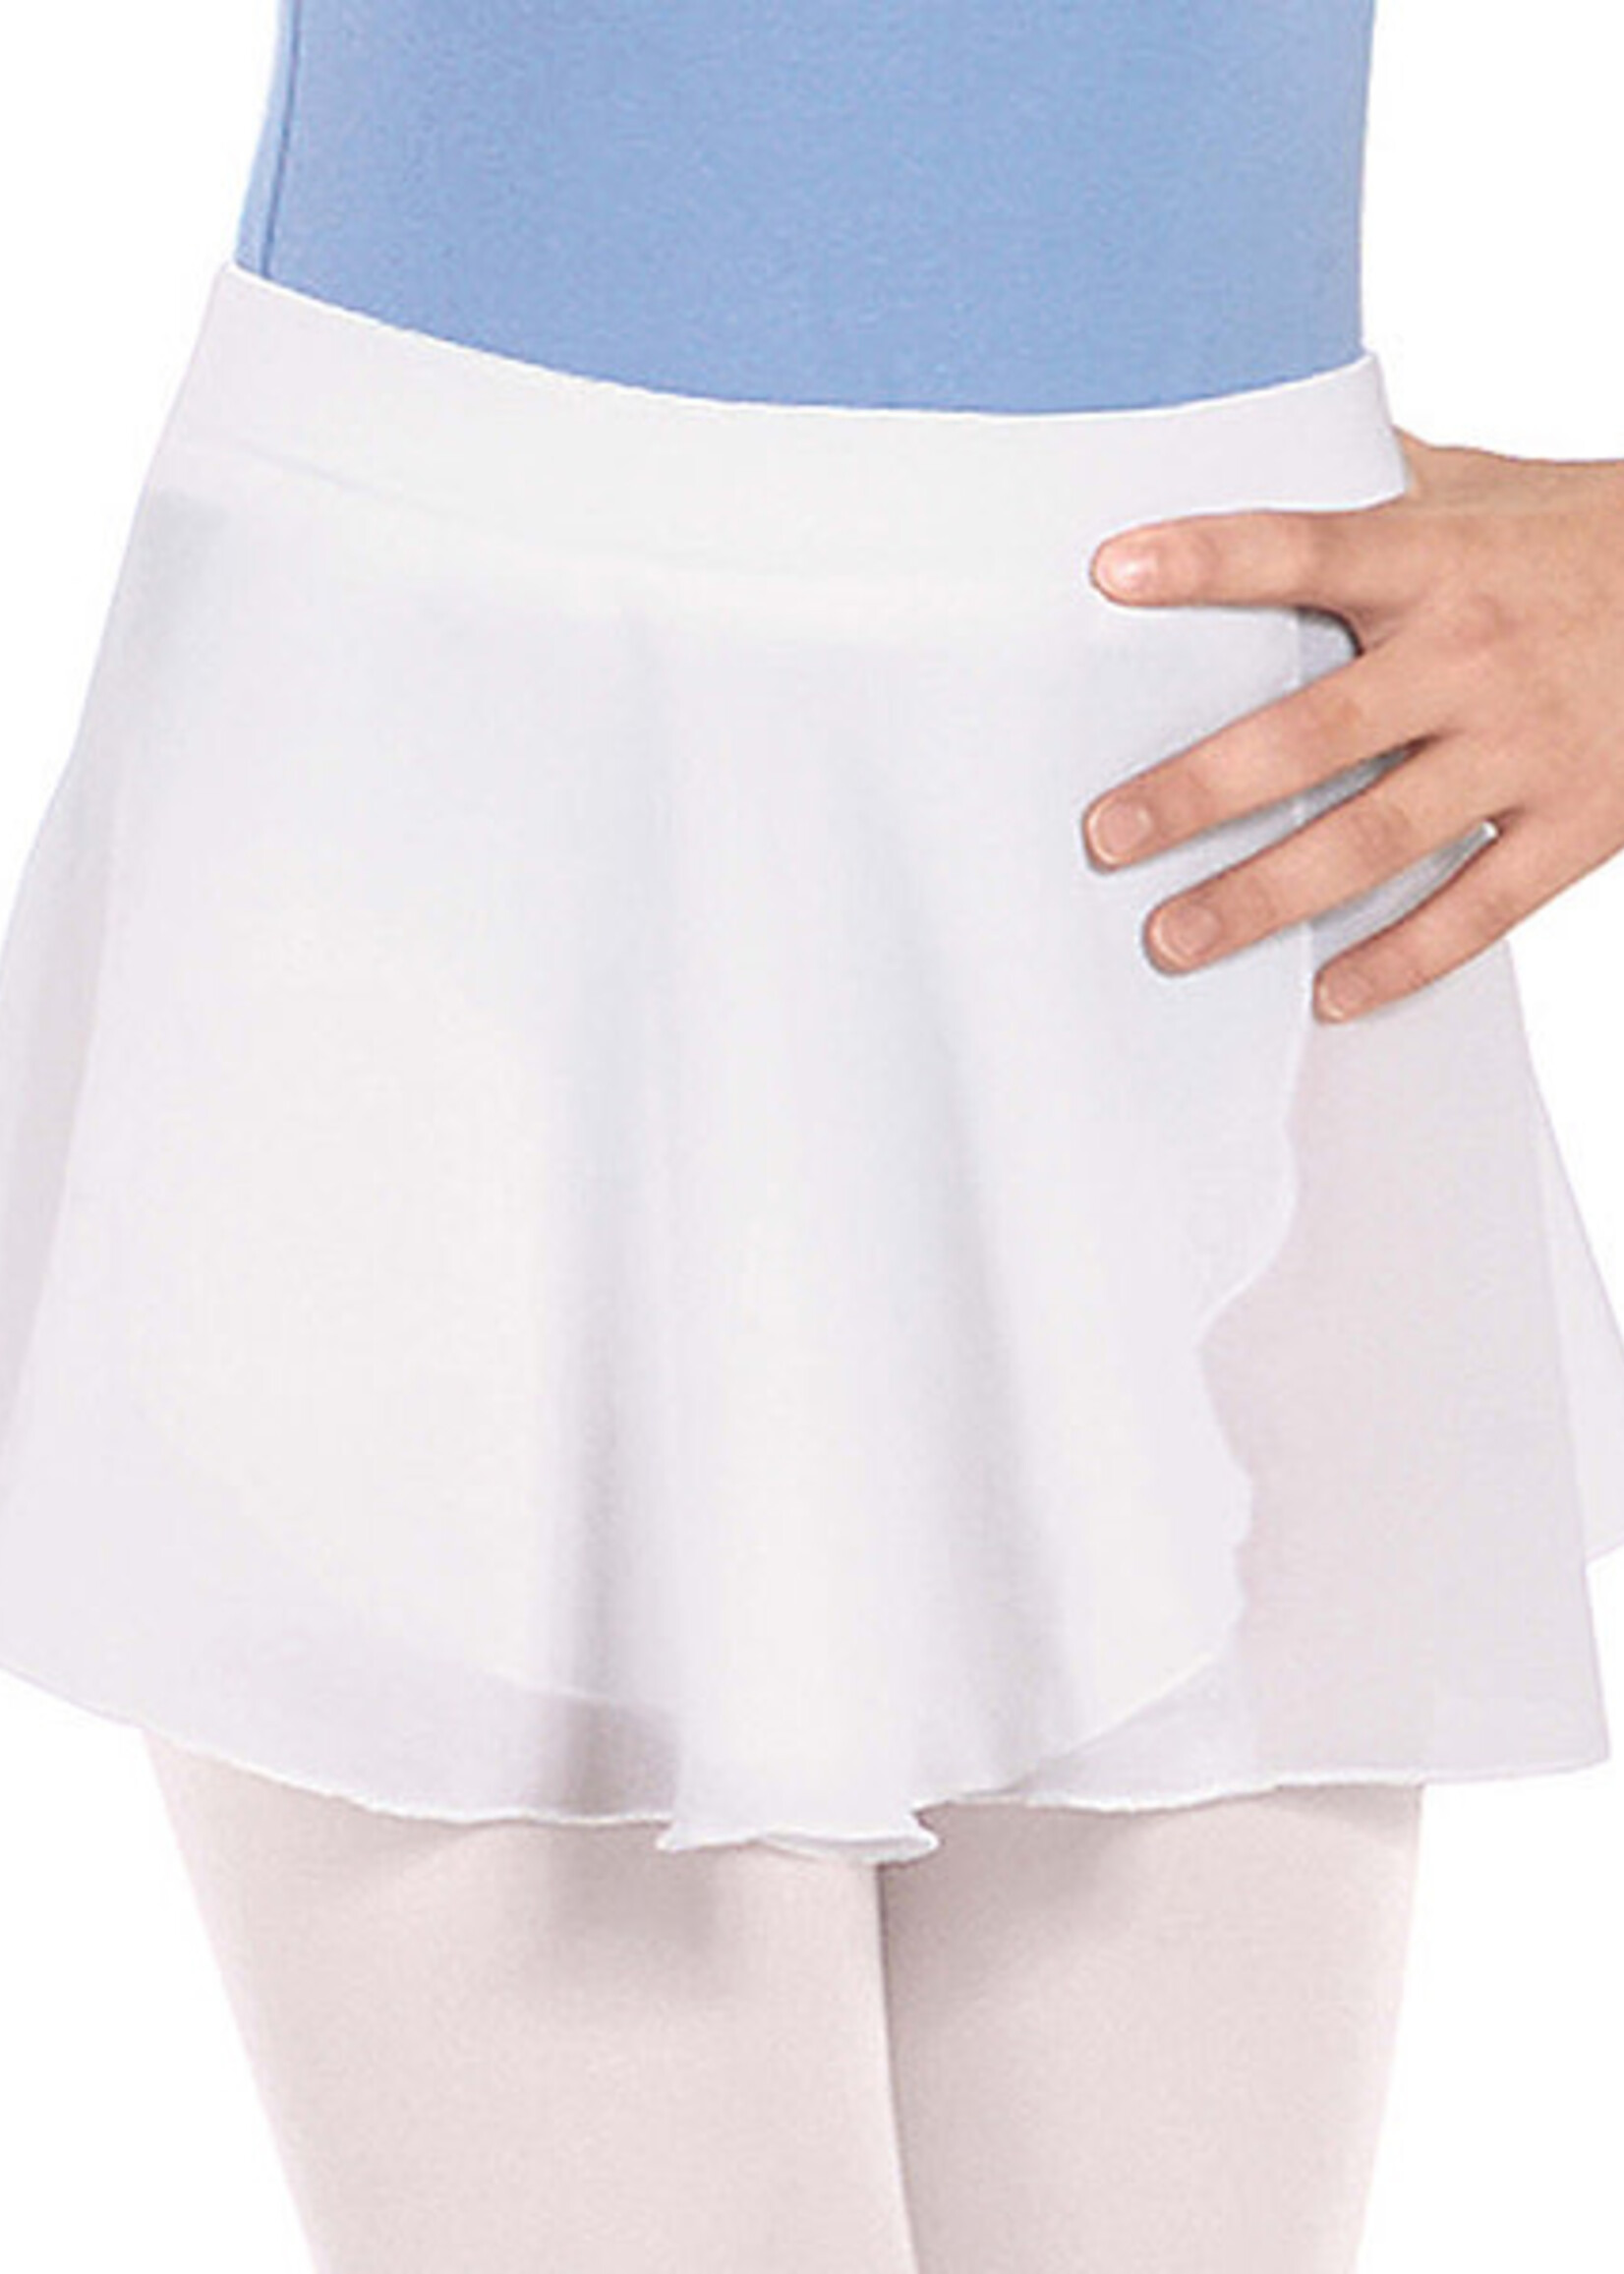 Eurotard 10127 Girls Mock Pull Up Wrap Skirt White